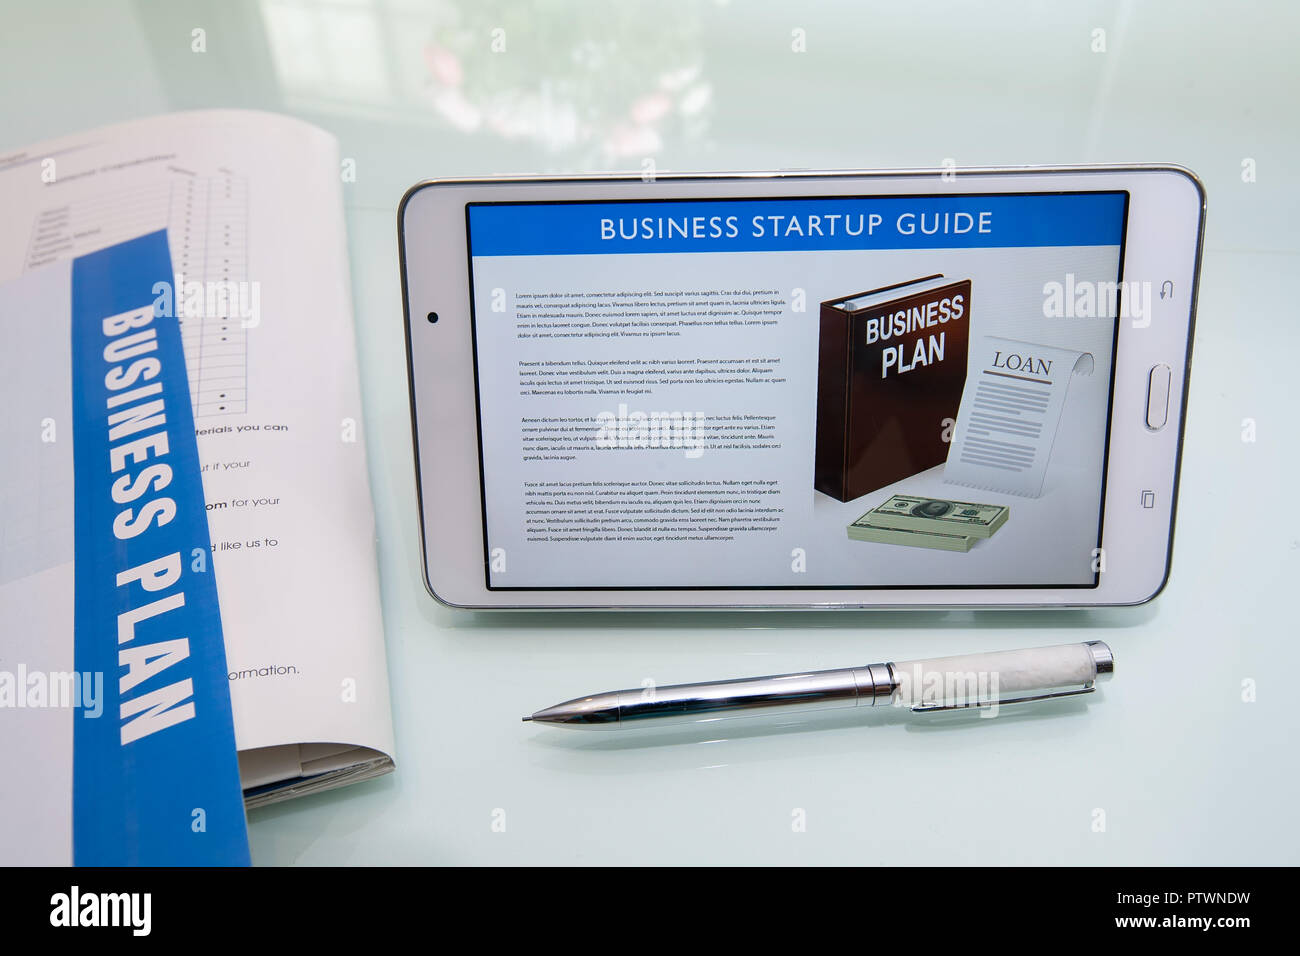 Rédaction d'un plan d'affaires à l'aide d'un guide de démarrage d'entreprise, documents imprimés, un stylo, et une tablette ou un appareil mobile sur un bureau en verre réfléchissant. Banque D'Images